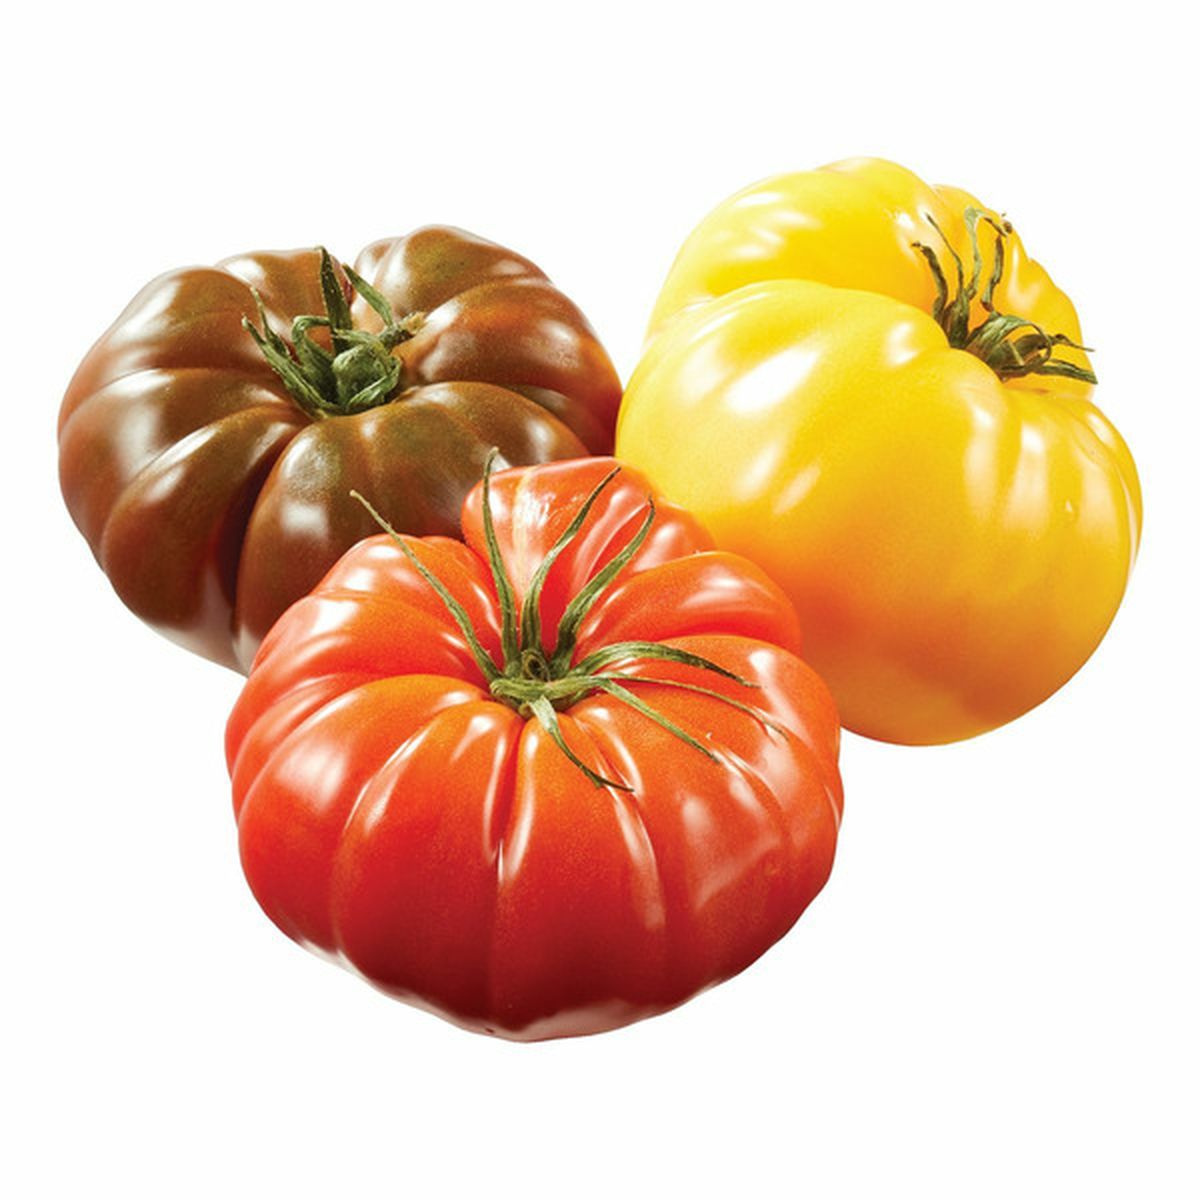 CO Tomato Heirloom Beefsteak • Kiwi Nurseries Ltd